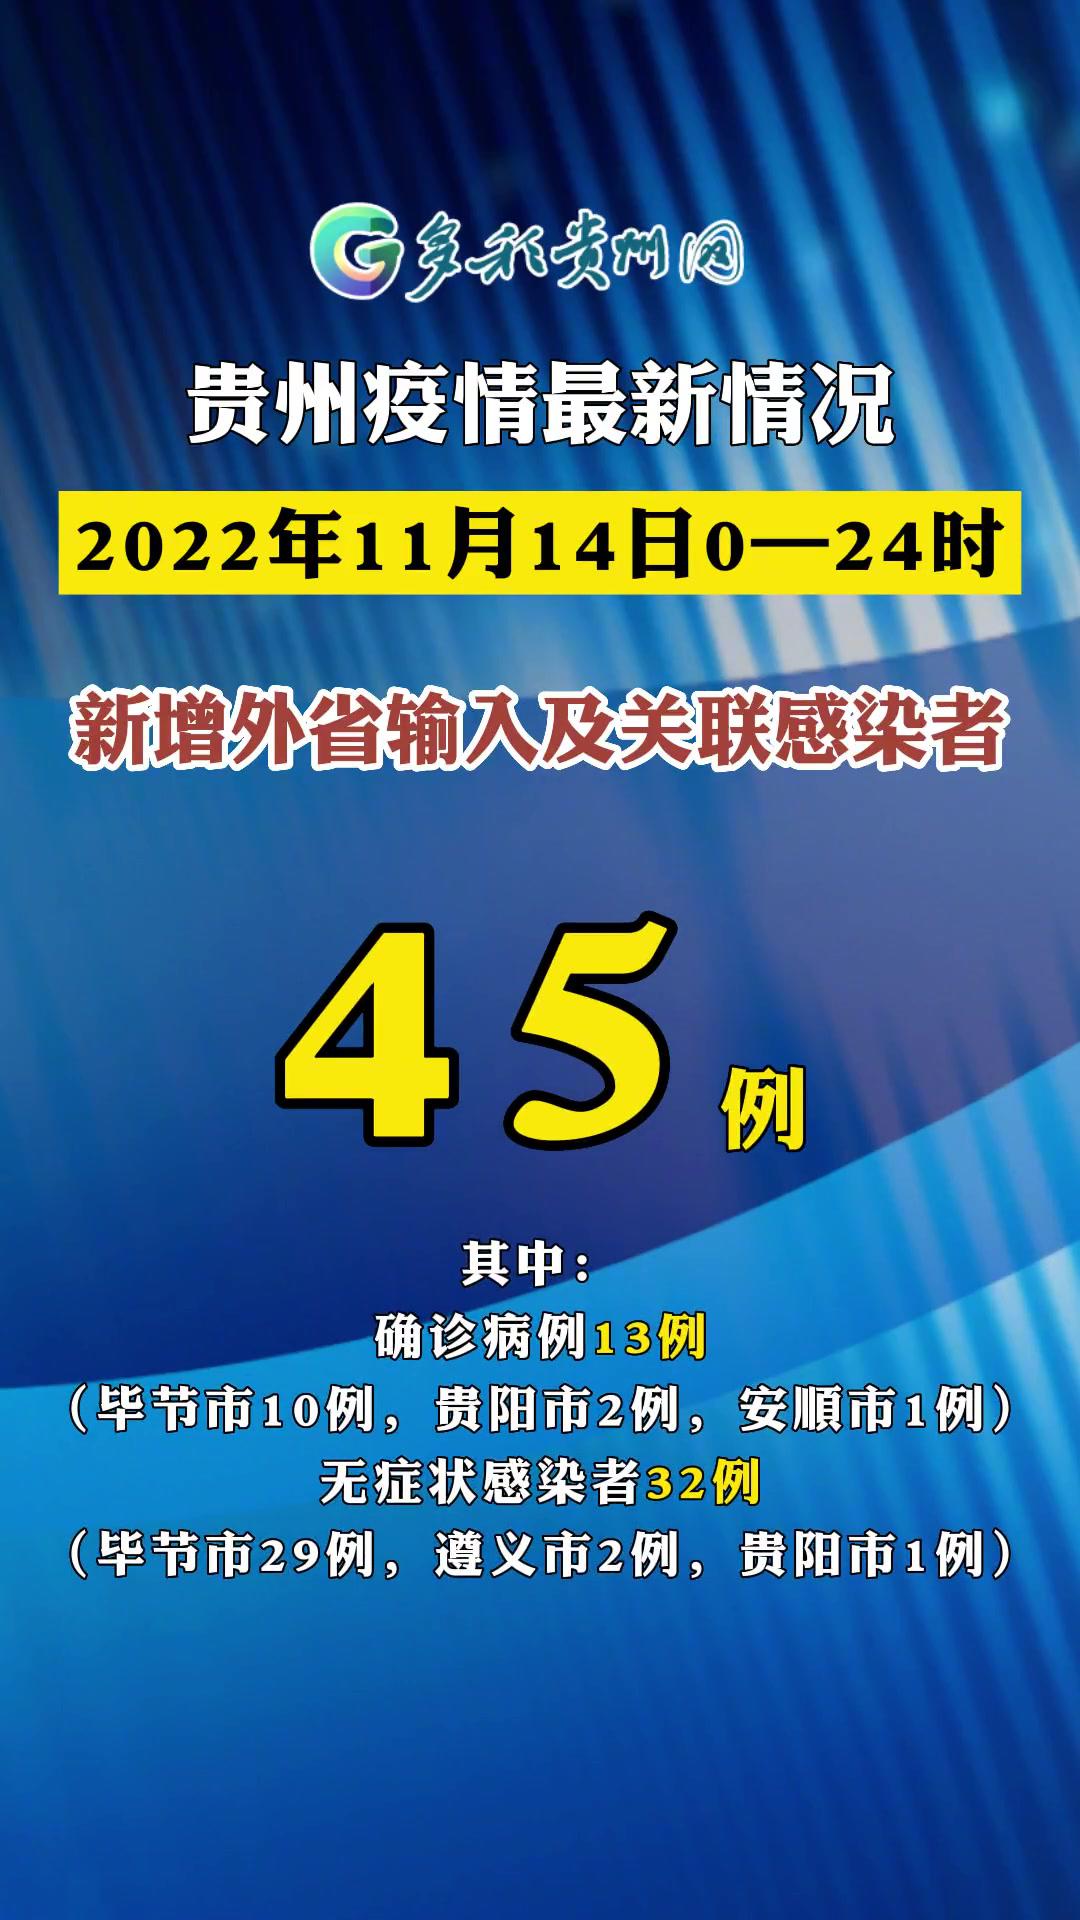 11月14日贵州省新冠肺炎疫情信息发布 疫情 贵州